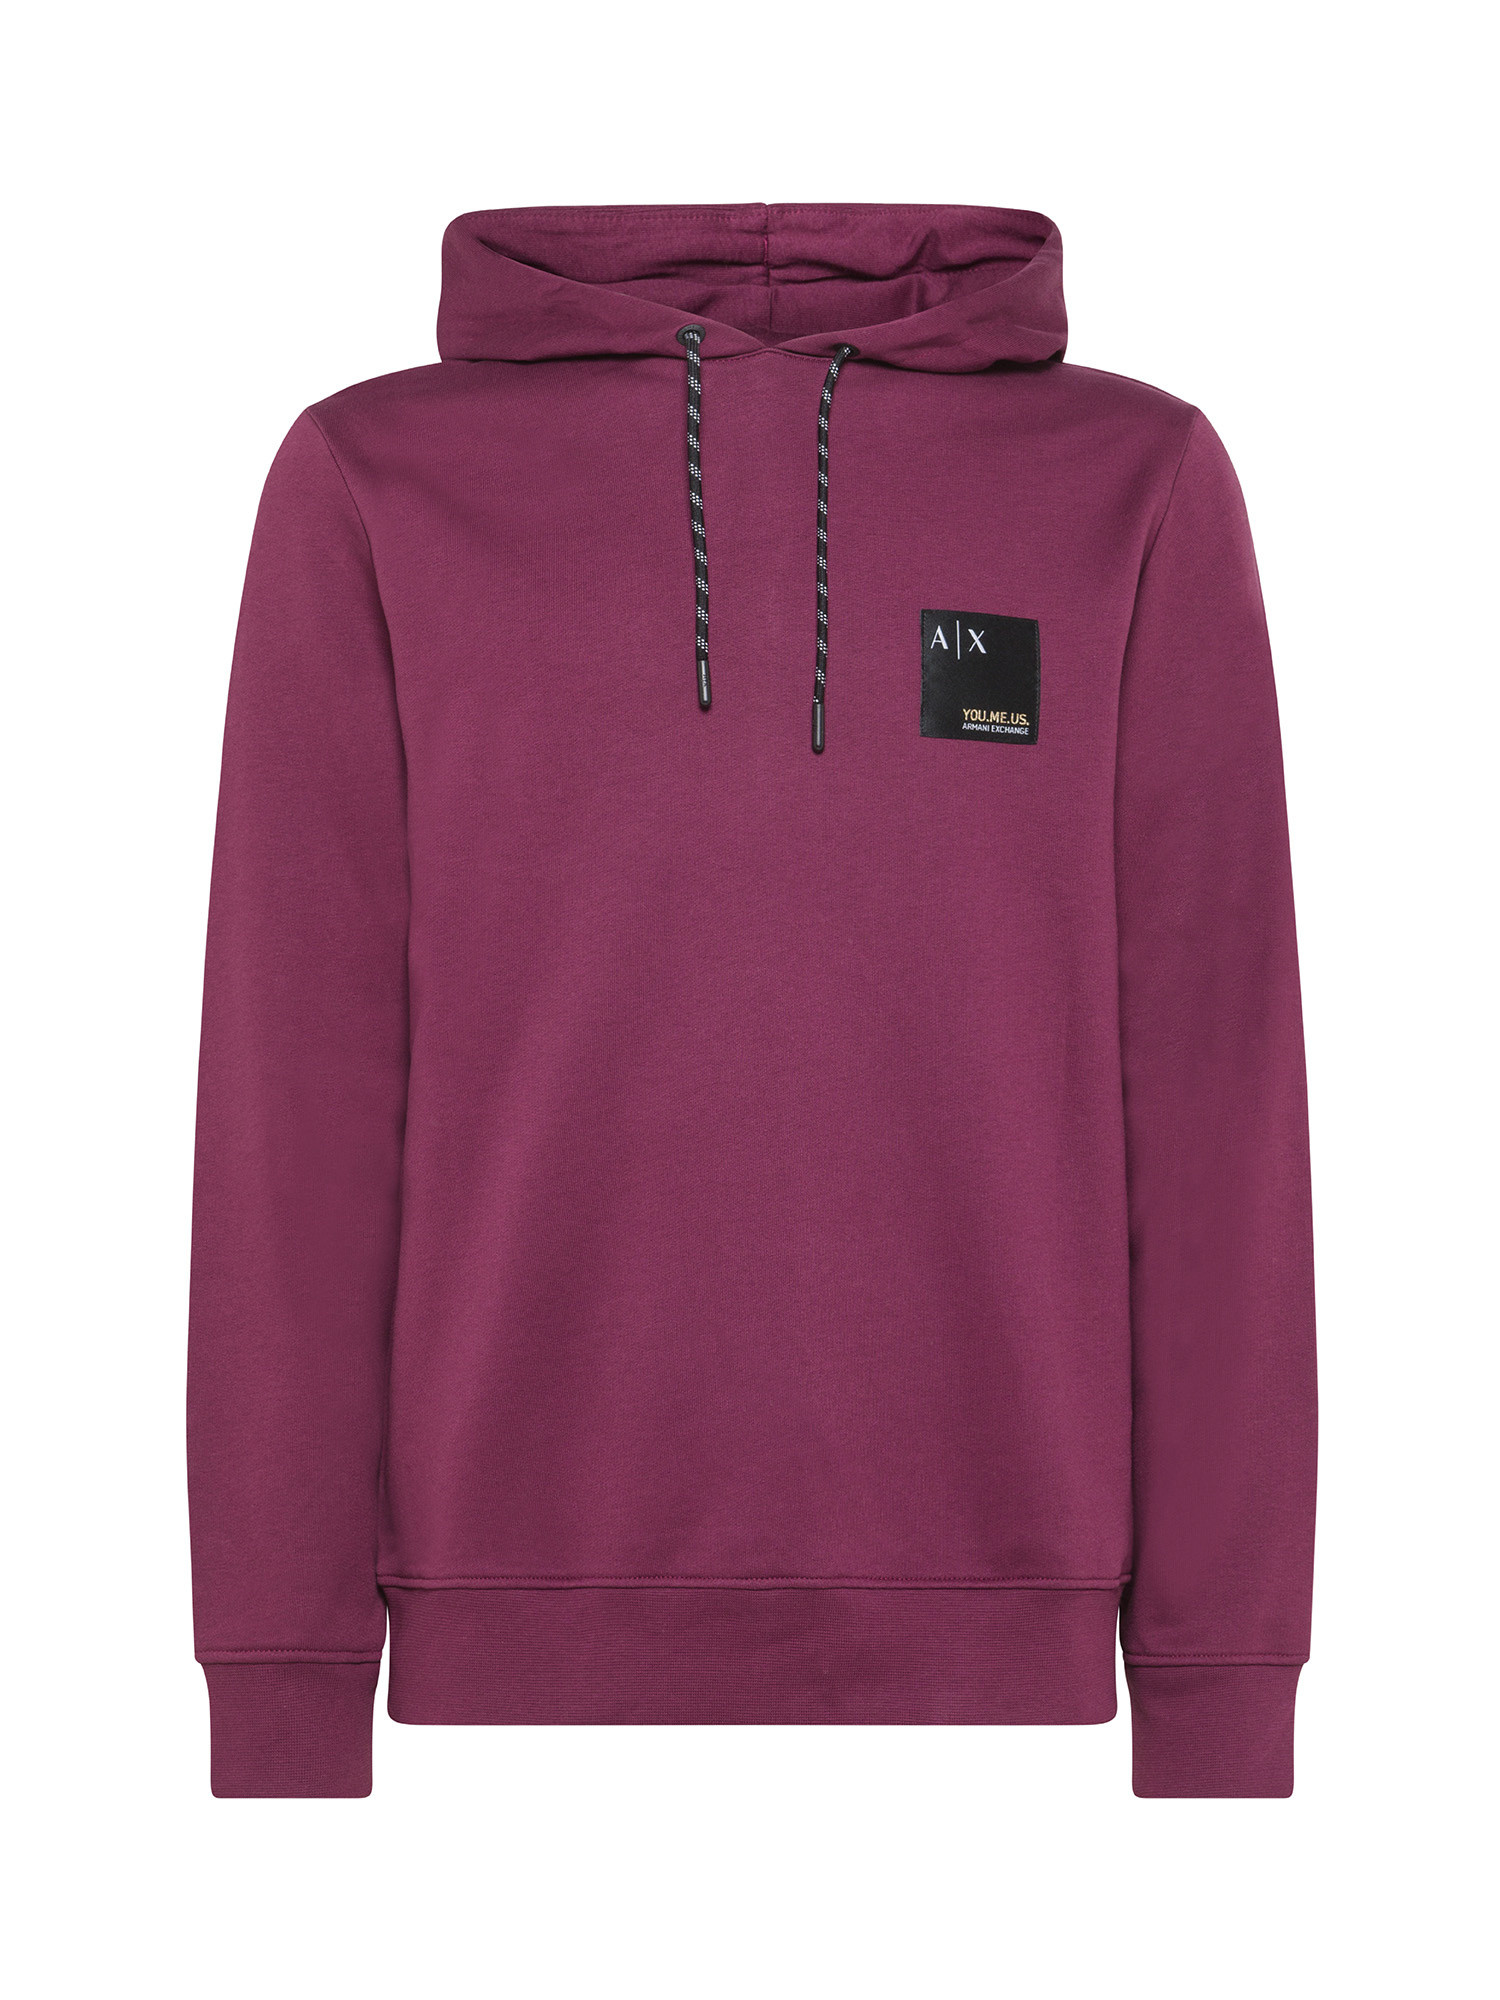 Armani Exchange - Sweatshirt with hood and logo, Purple, large image number 0